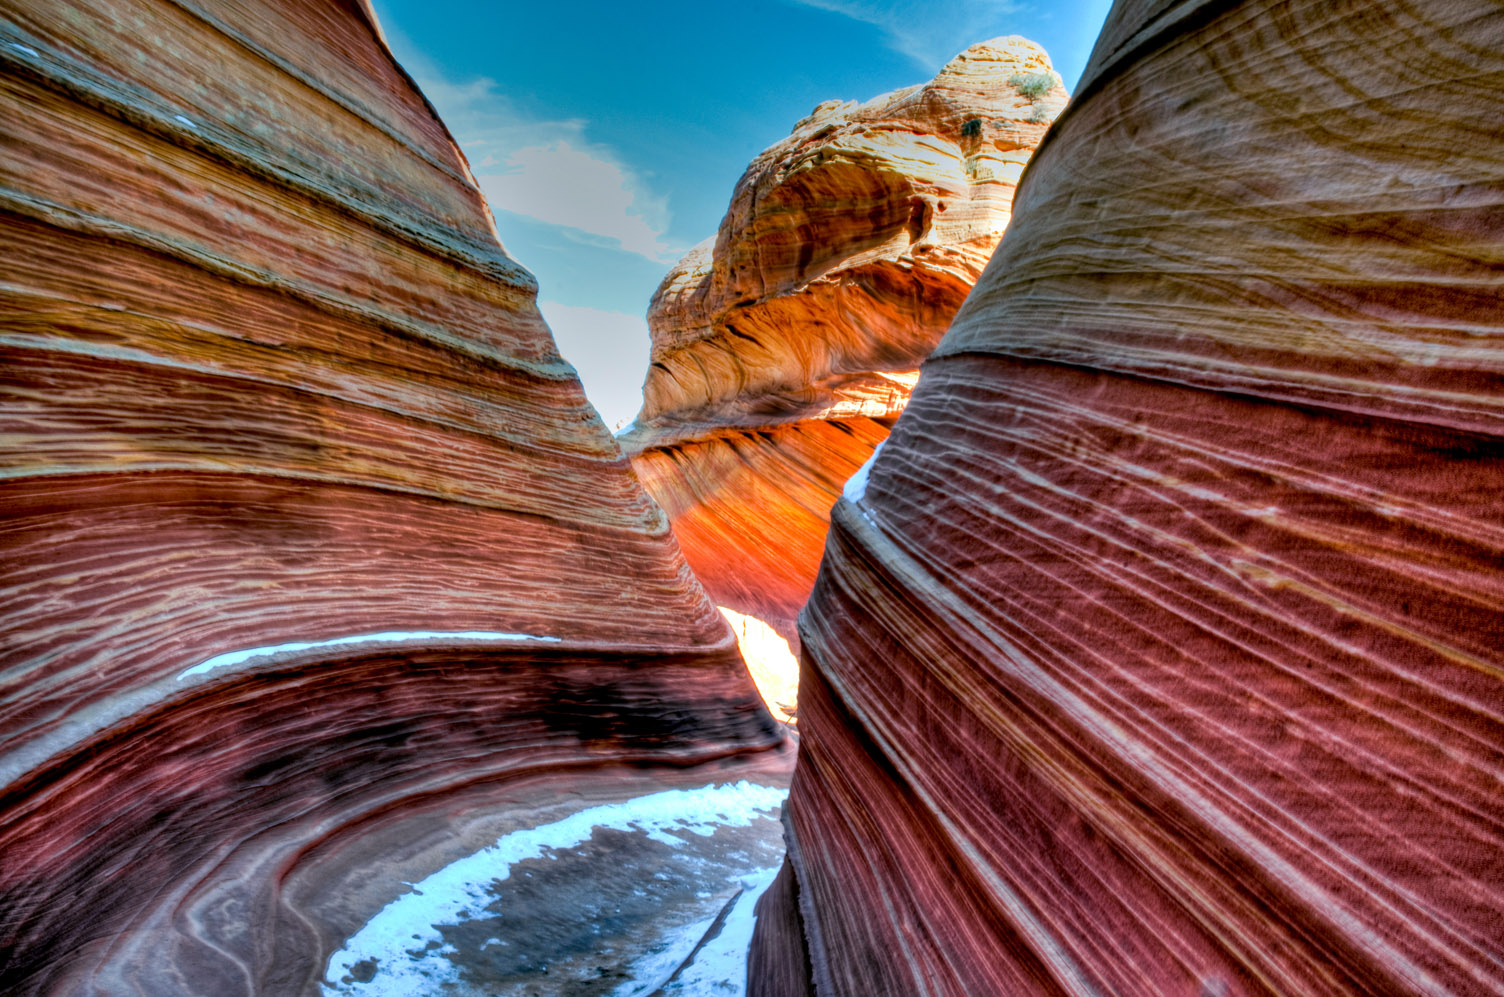 The Wave, Vermilion Cliffs National Monument, Arizona